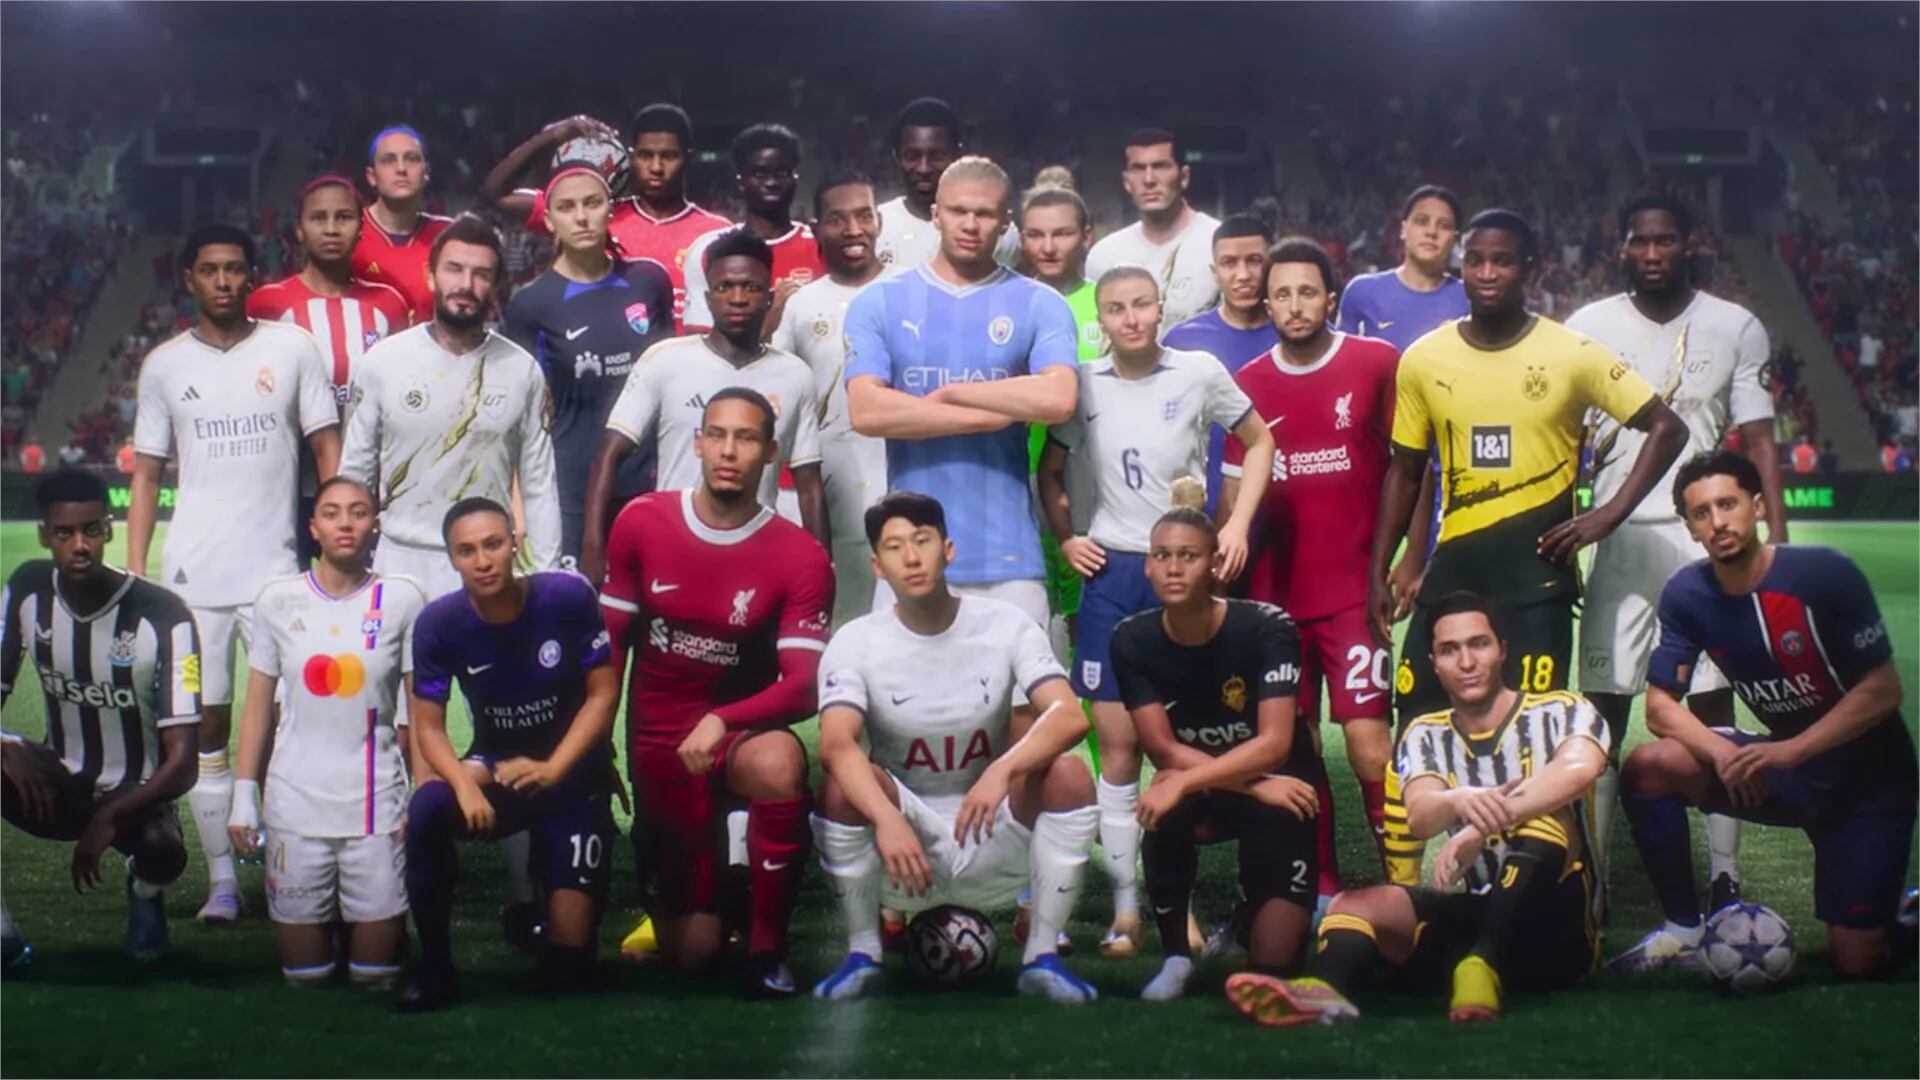 Top 6 de juegos de fútbol para Android y iPhone - Infobae